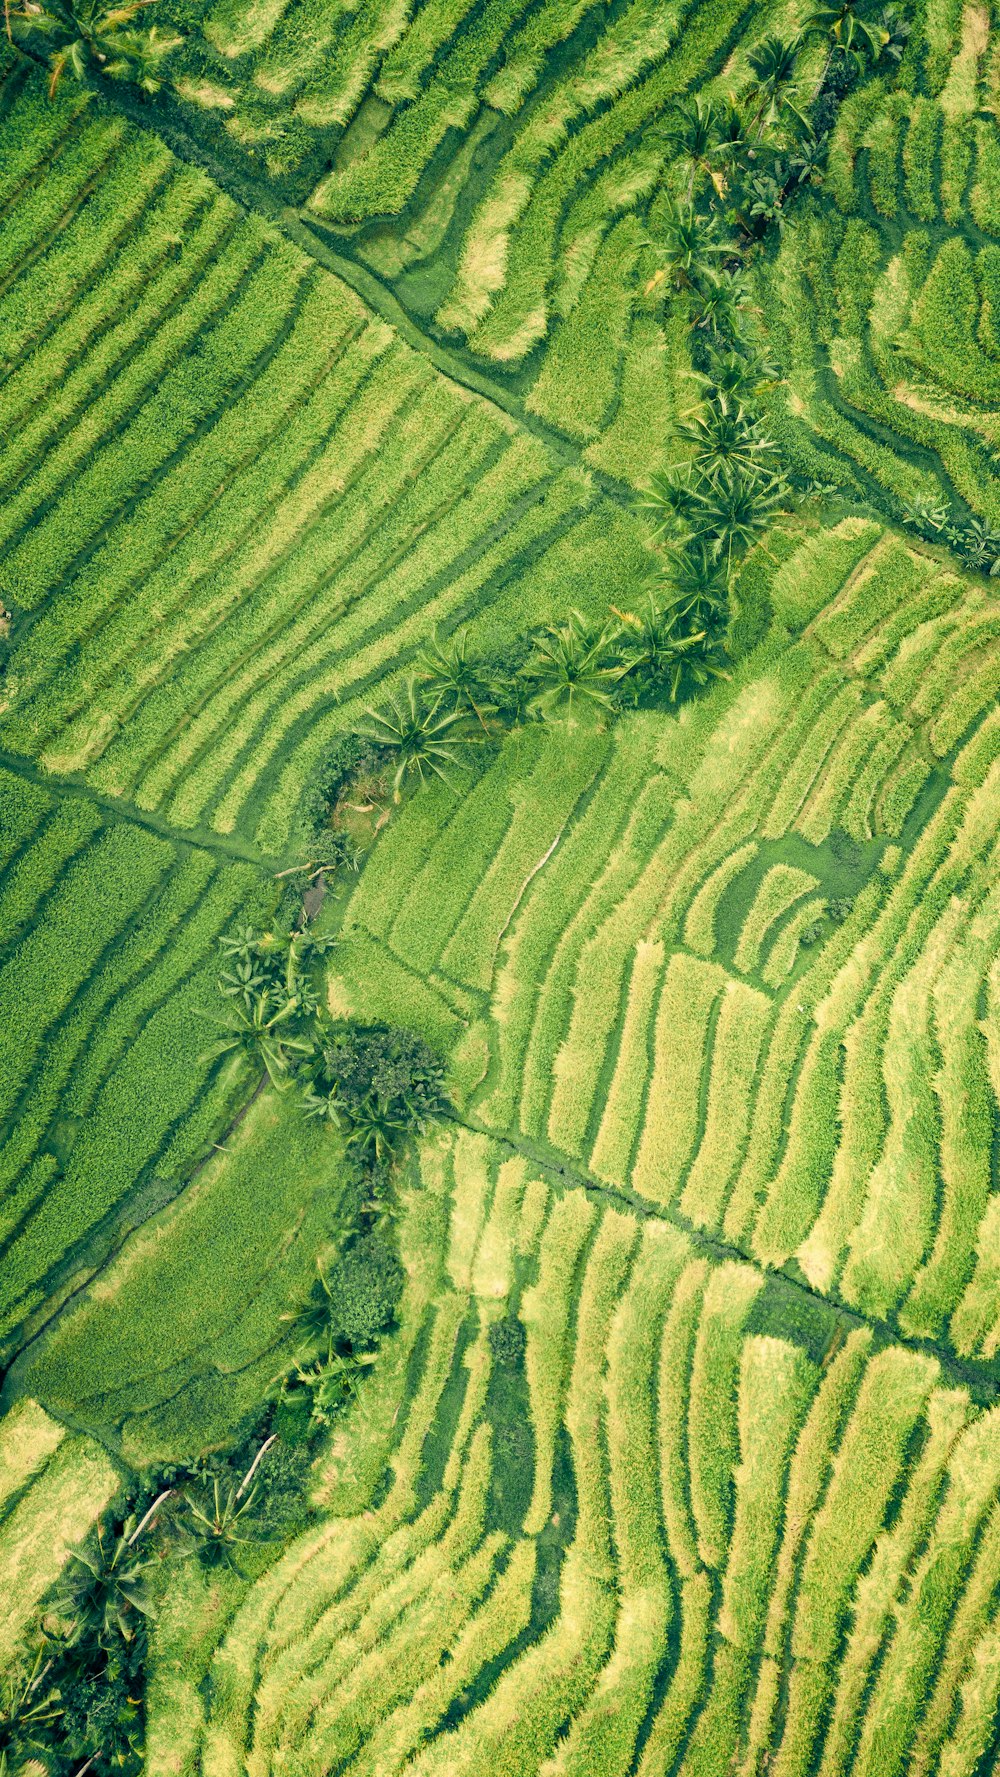 Luftaufnahmen auf der grünen Wiese